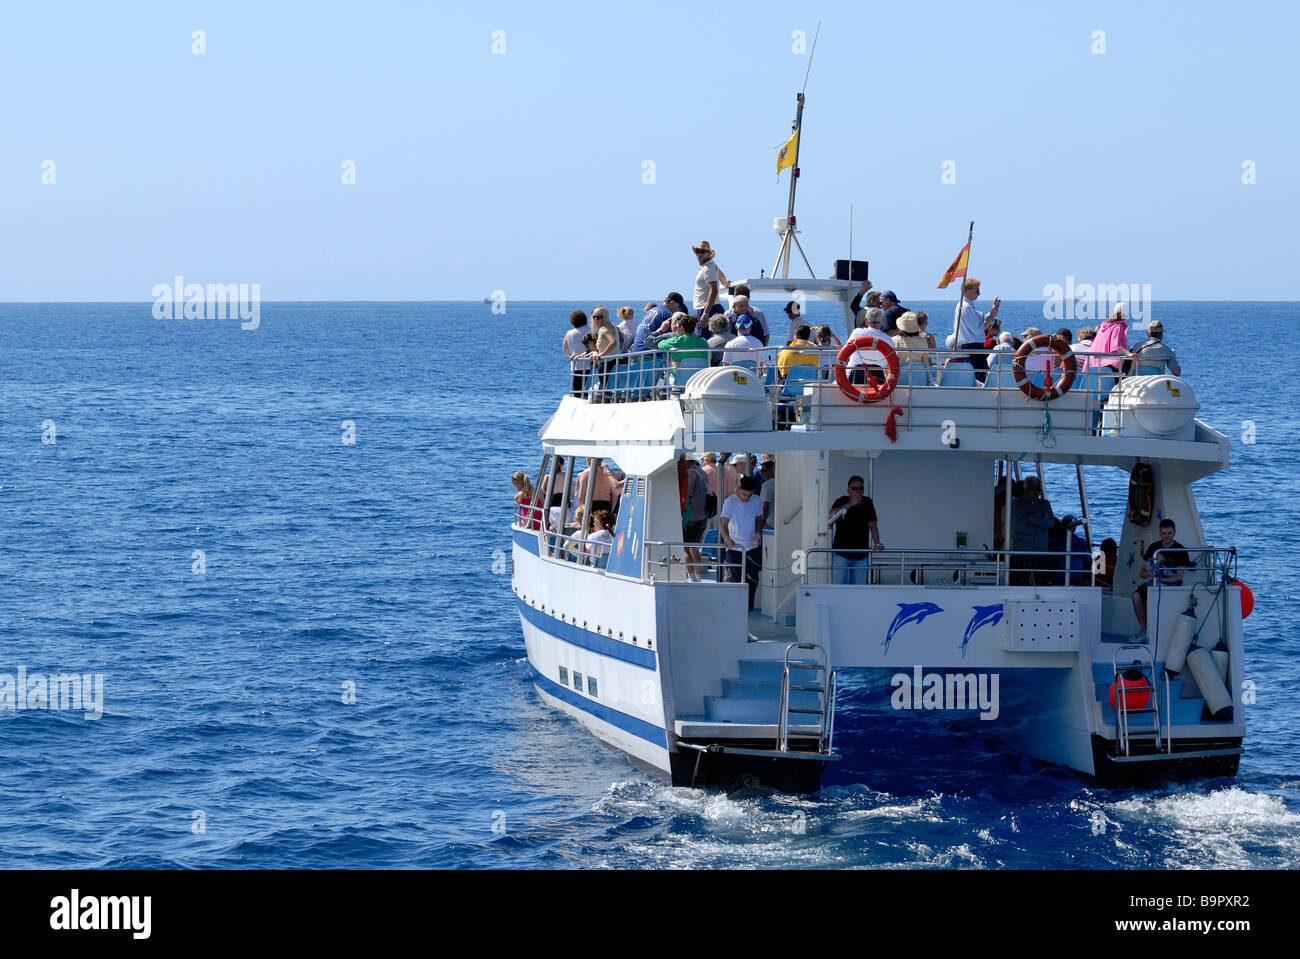 Die Exciment unter den Touristen auf dem Delphin Suche Boot. Puerto Rico, Gran Canaria, Kanarische Inseln, Spanien, Europa. Stockfoto